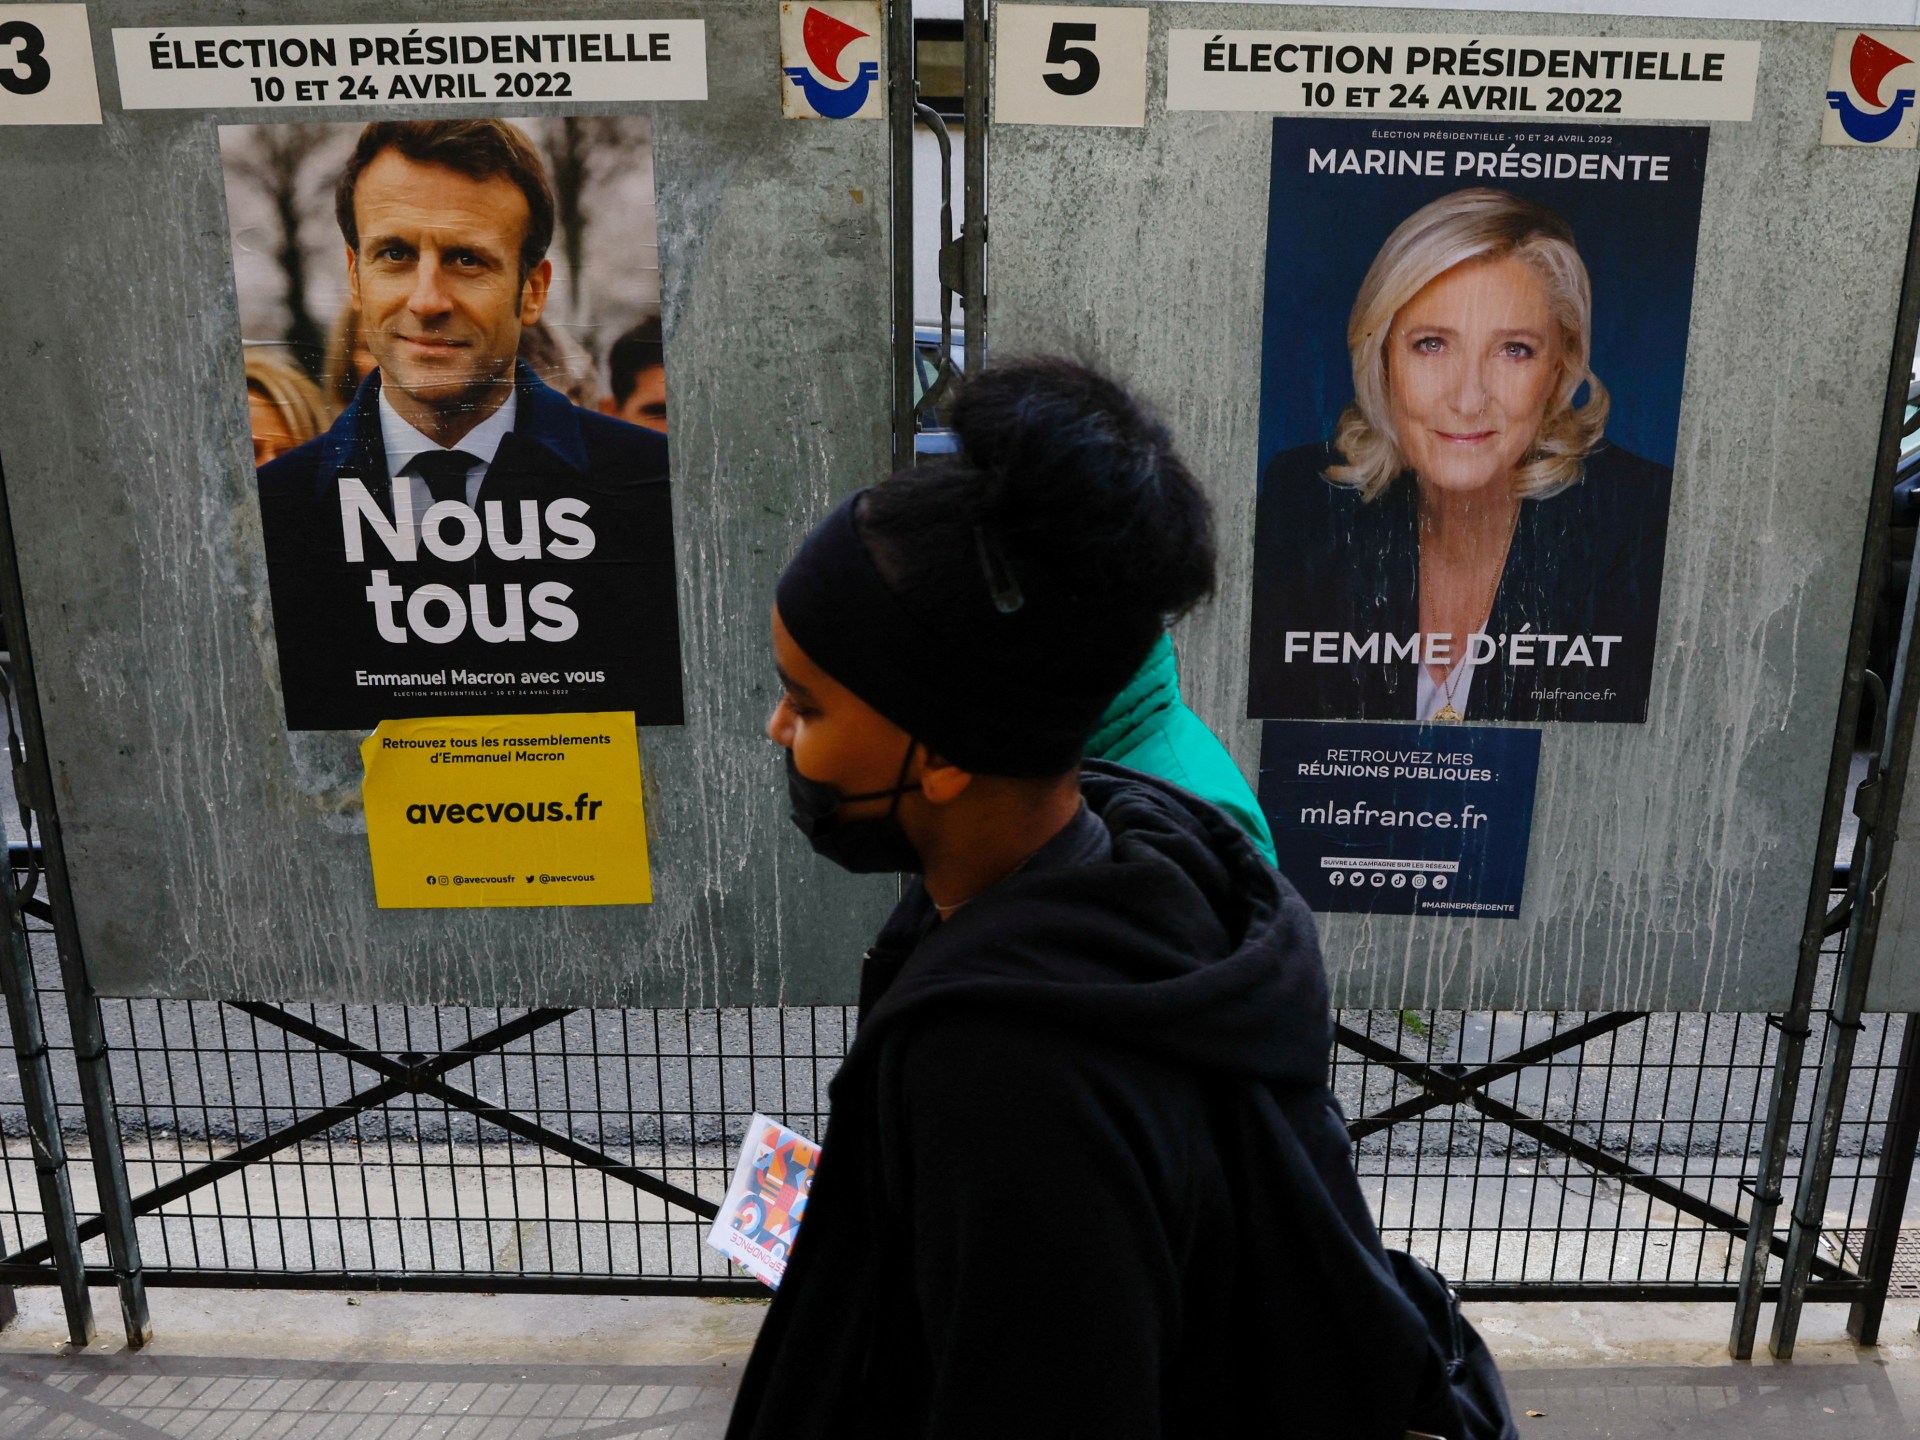 Les élections en France.  Comment les candidats Macron et Le Pen voient-ils la relation avec la Russie ?  |  Actualités politiques